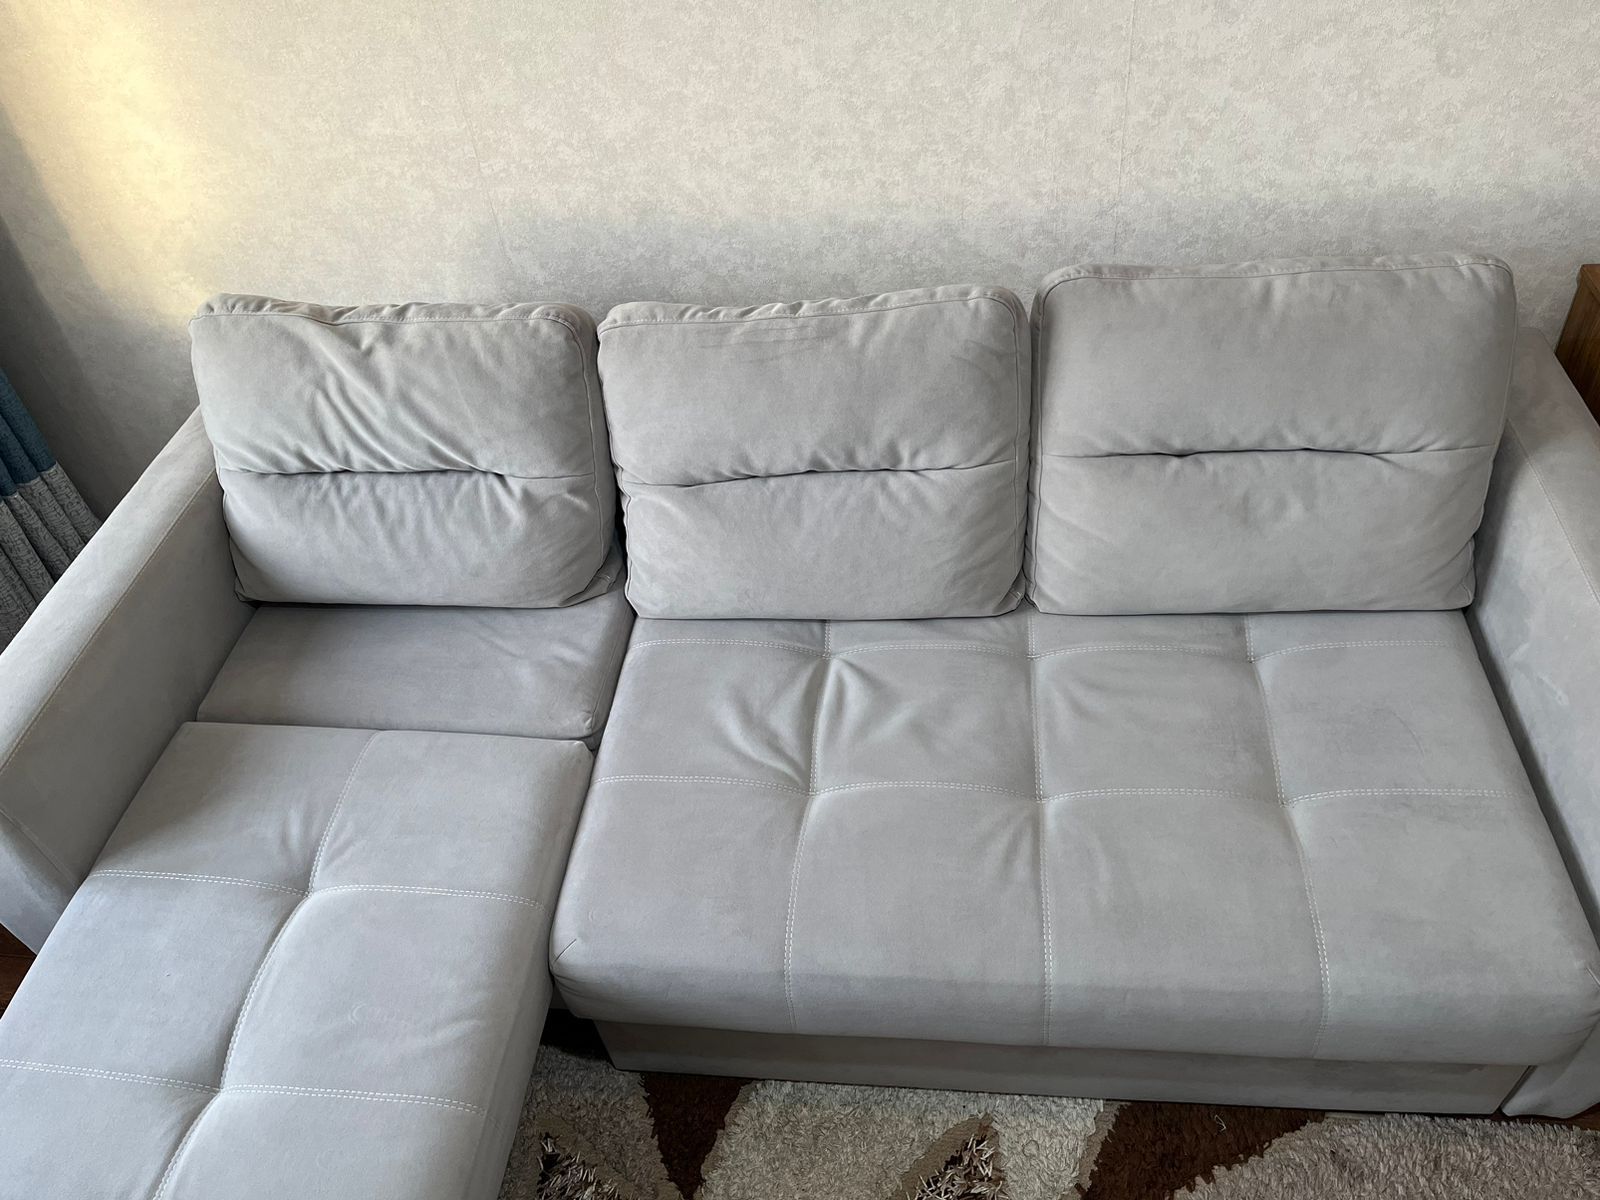 Мягкий уголок диван хорошего качество, серый цвет. Купили год назад